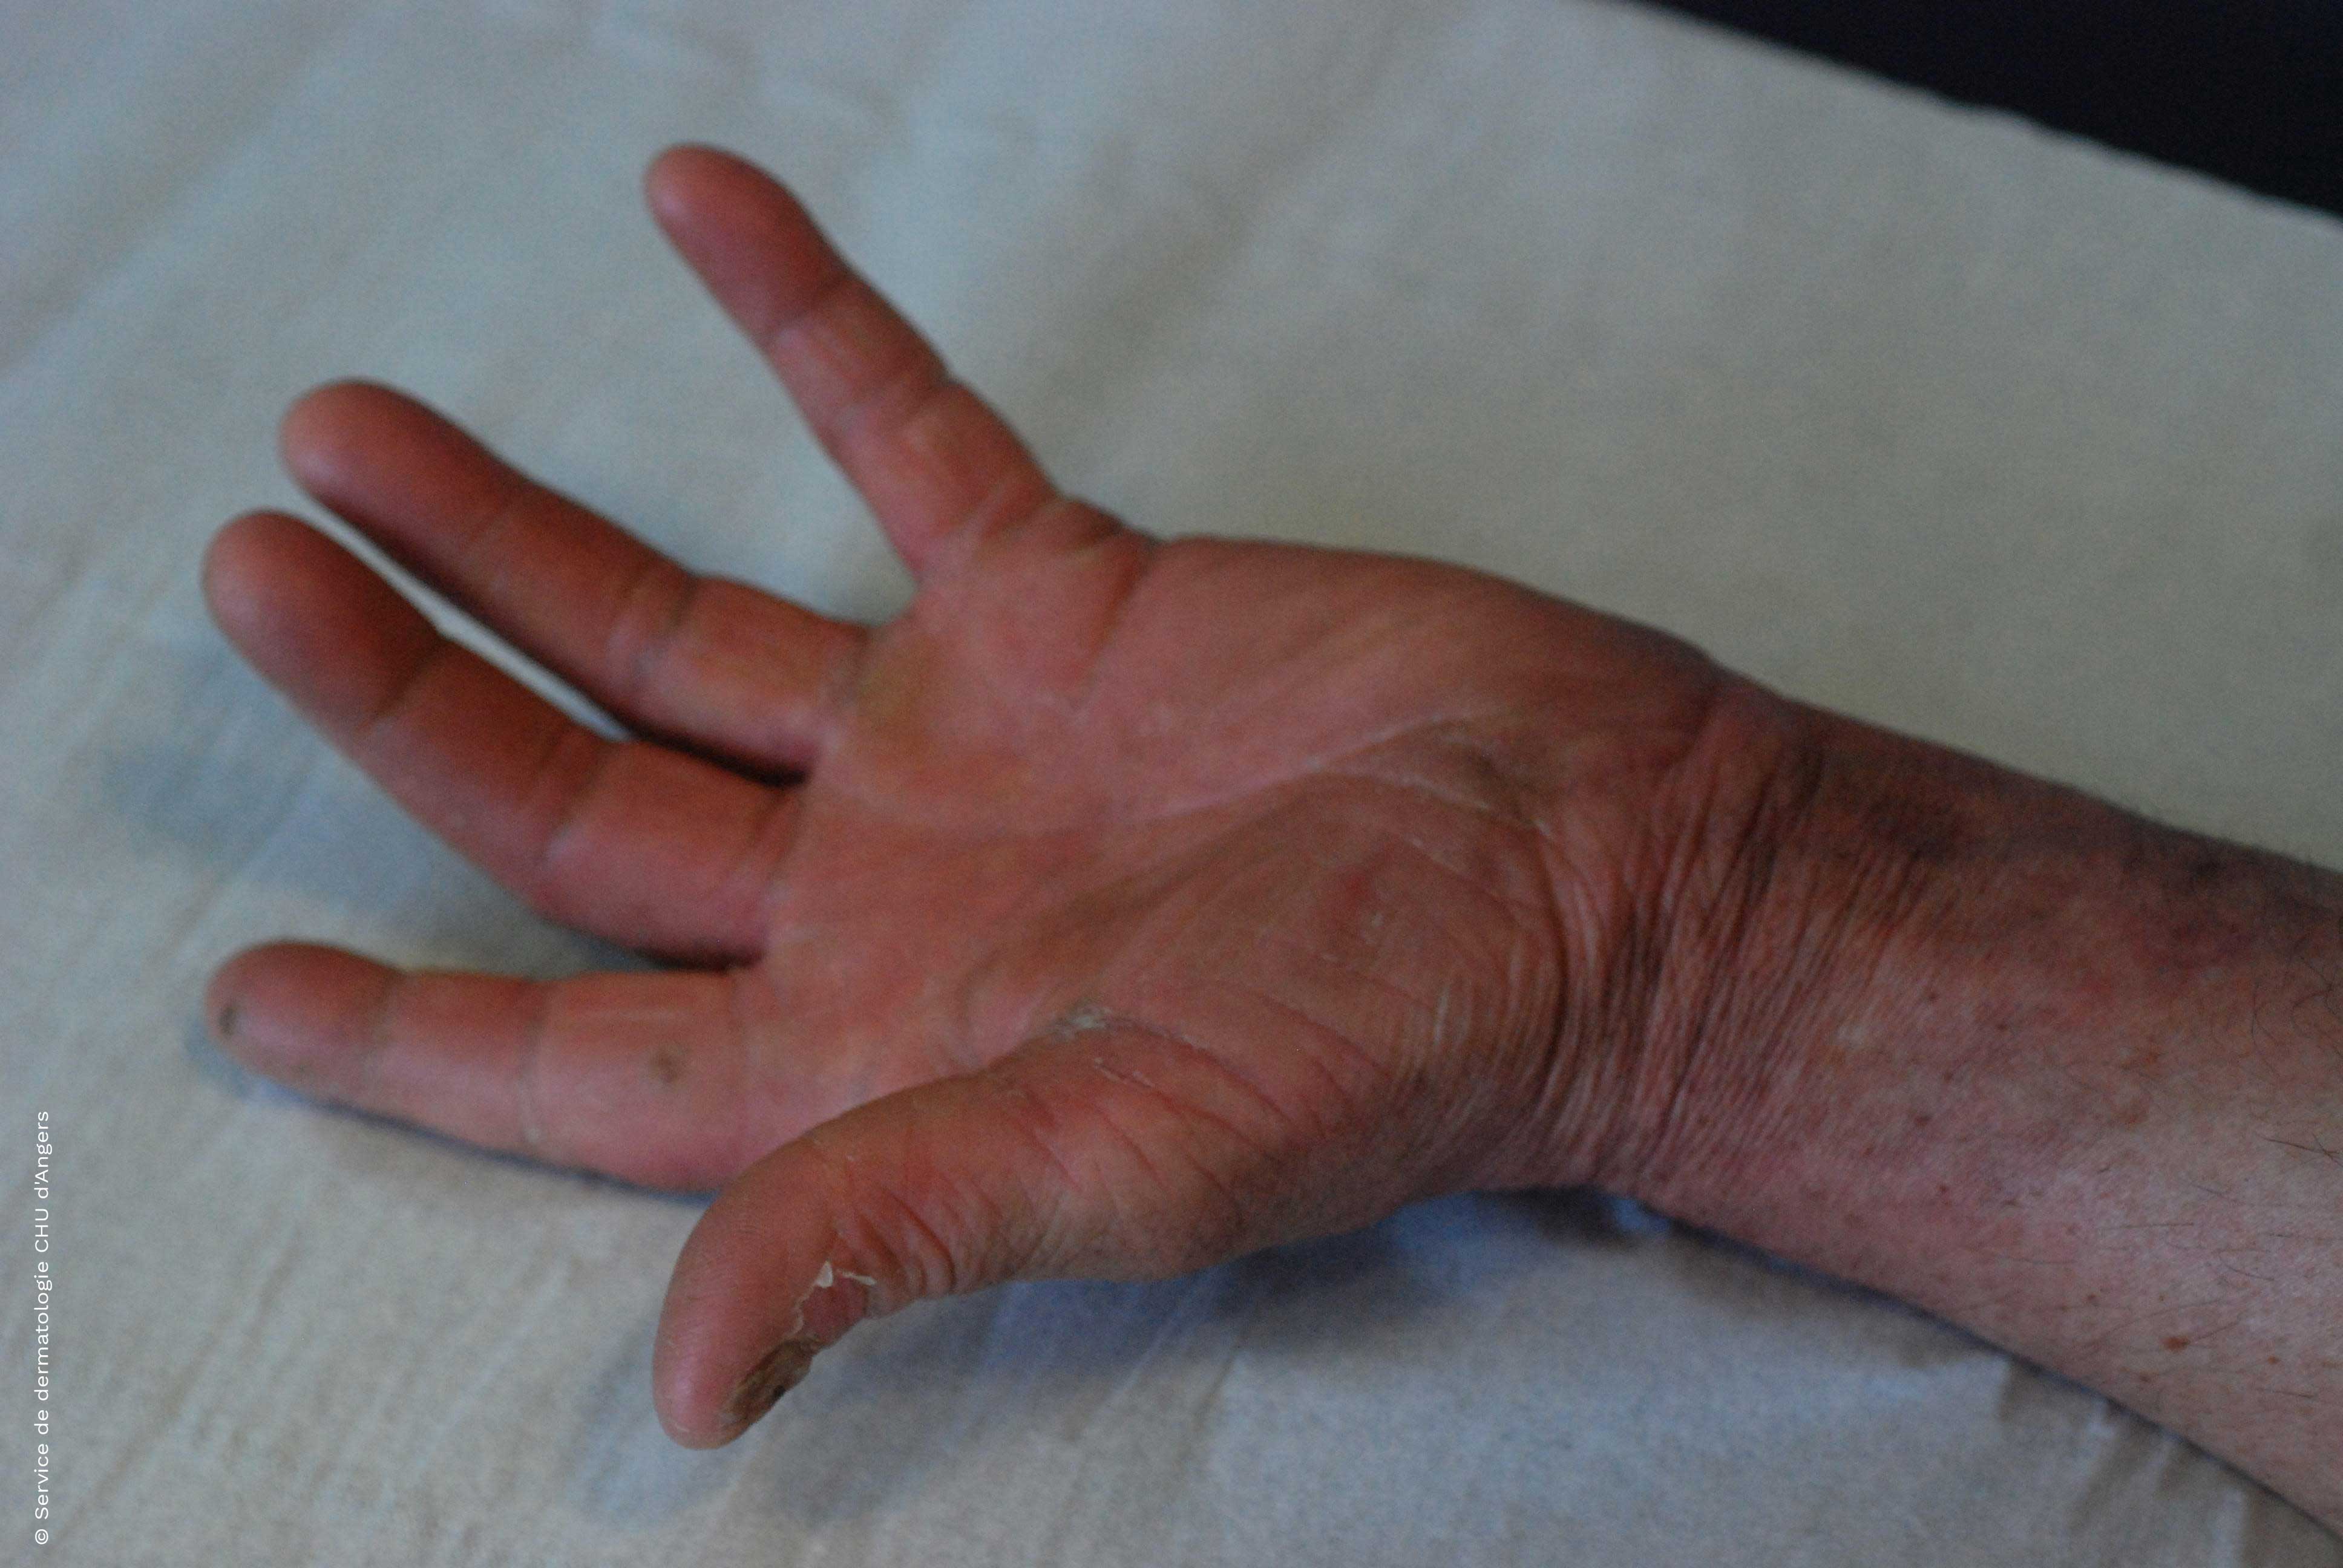  Dermatophytie an der Hand nach antimykotischer Behandlung